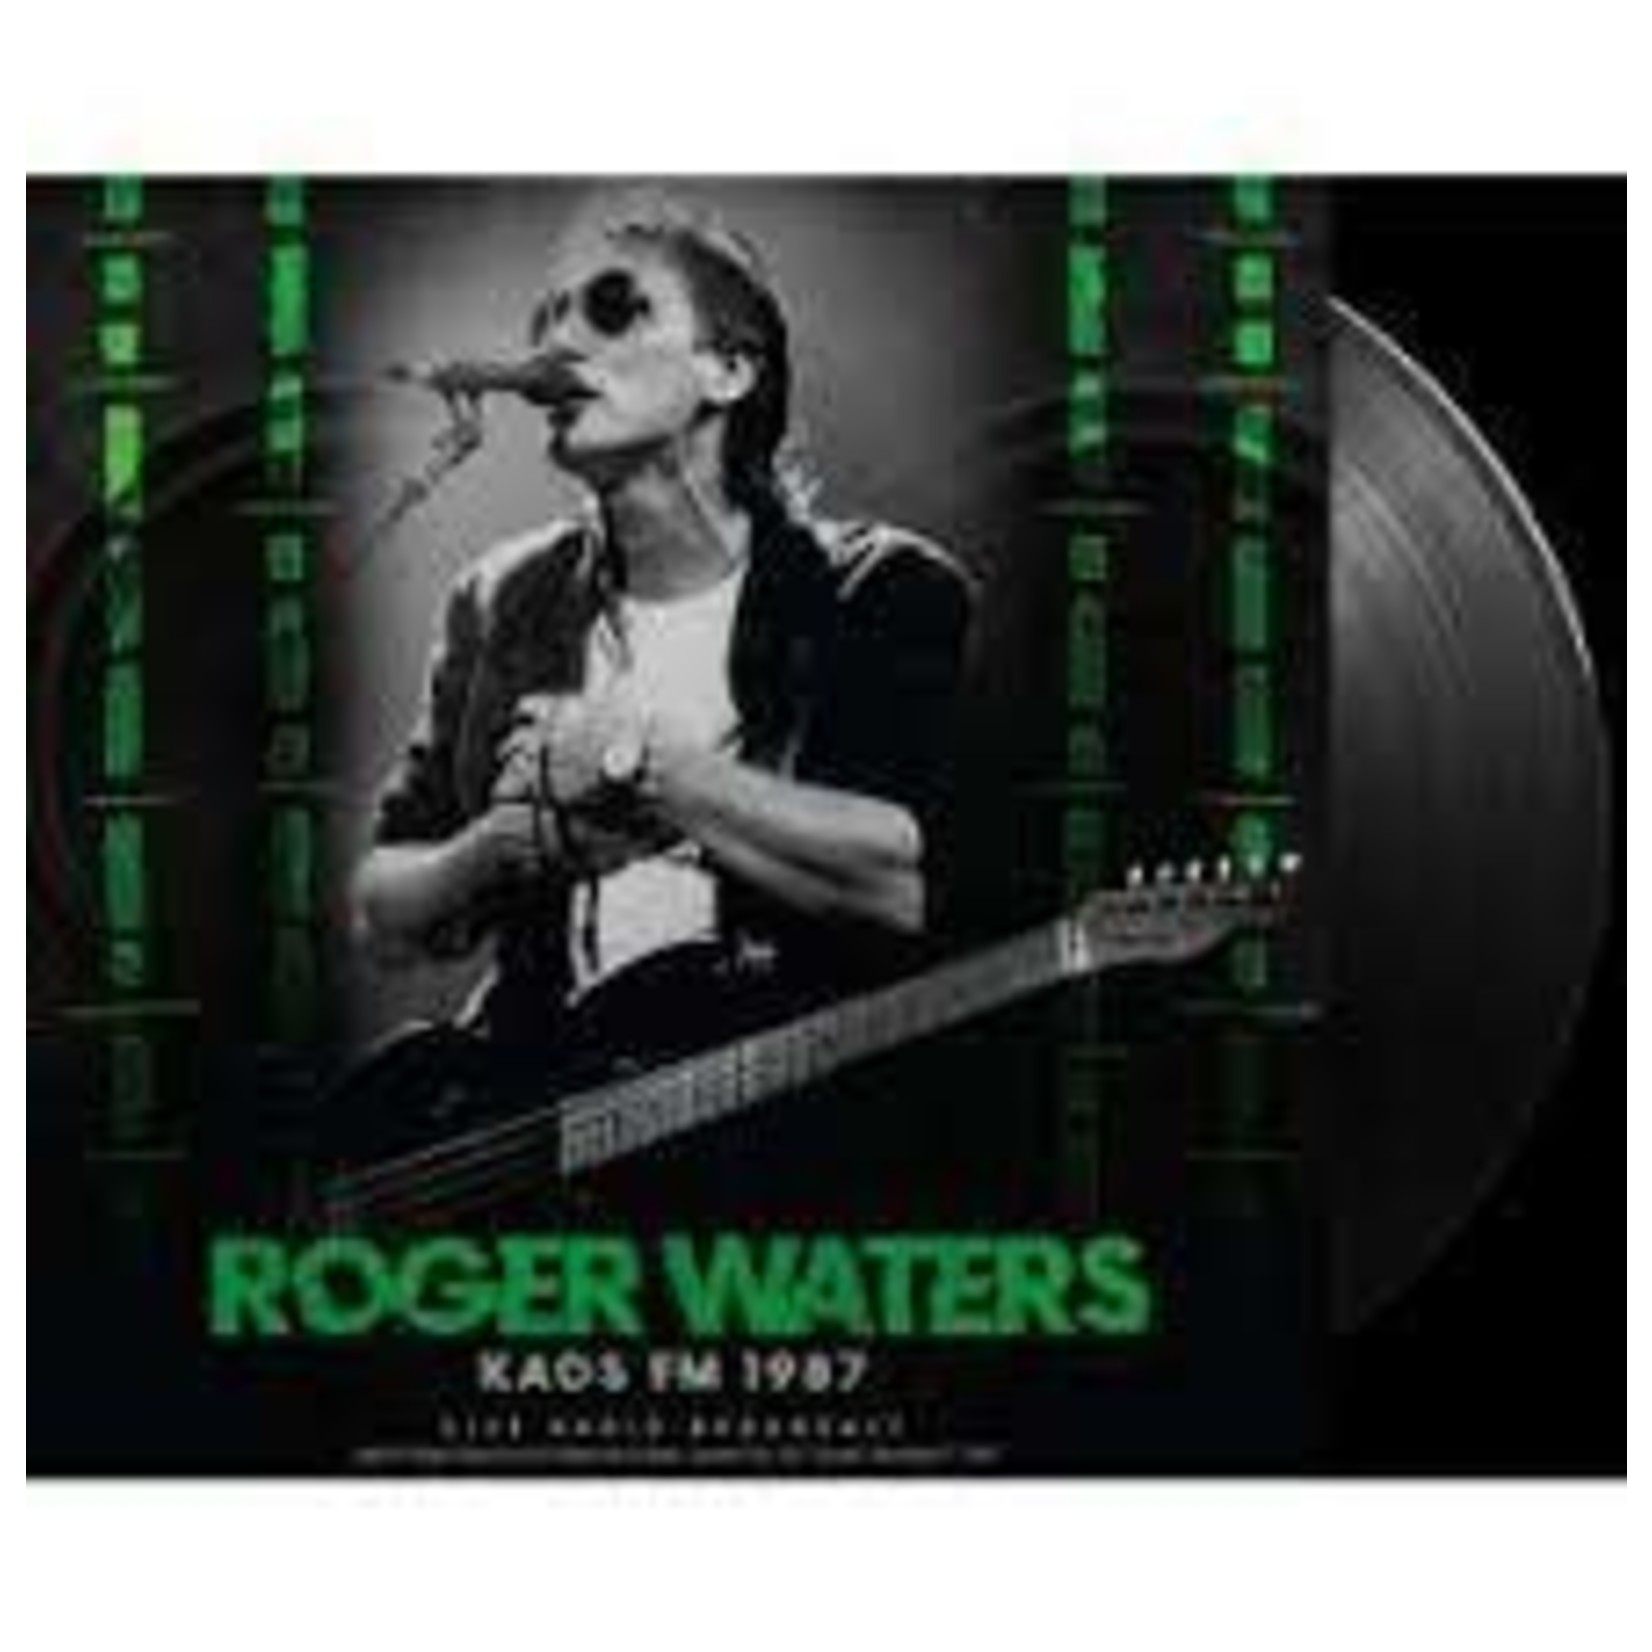 ROGER WATERS KAOS FM 1987  LP